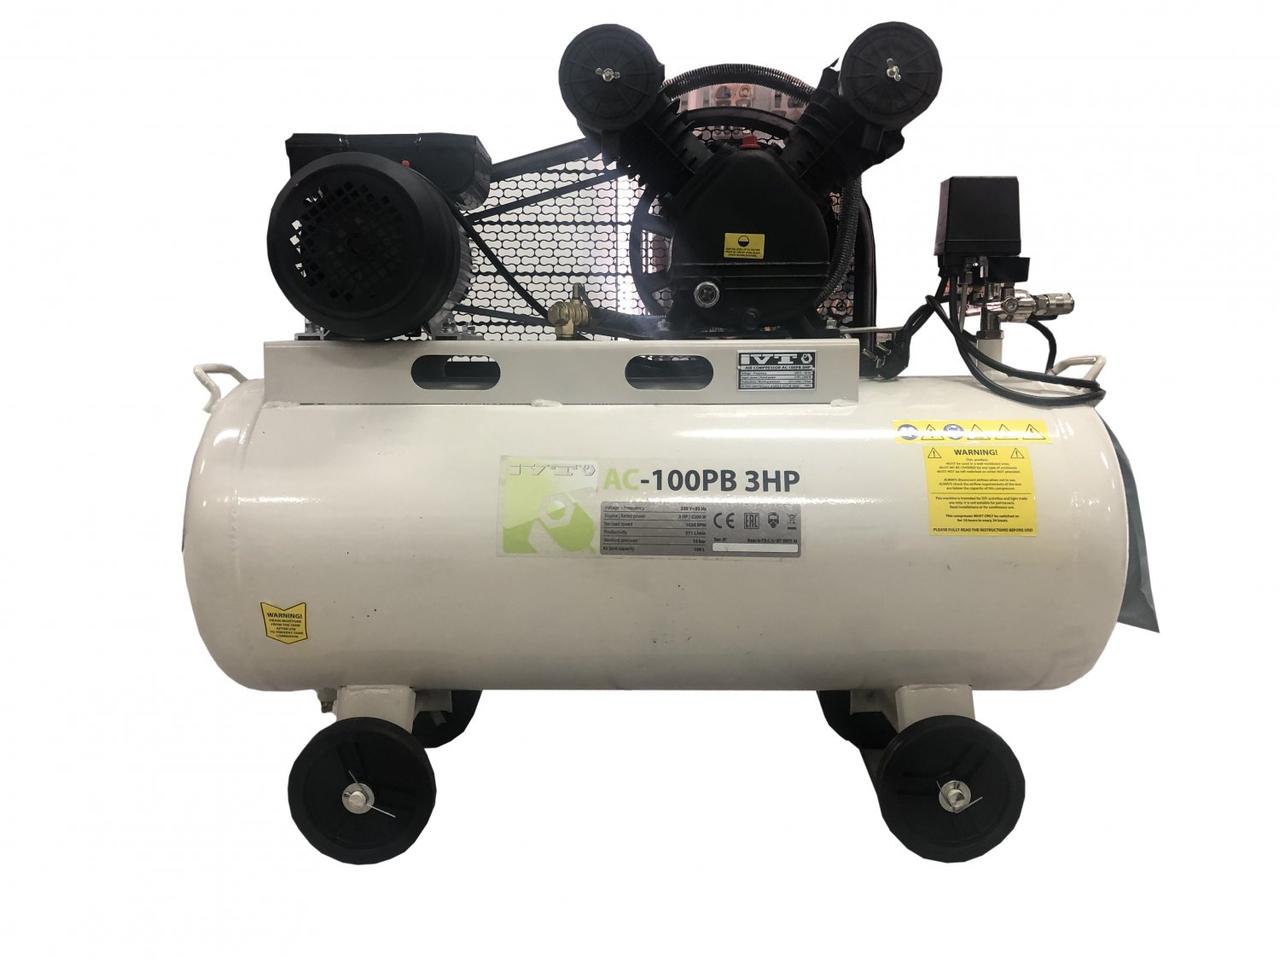 Воздушный компрессор IVT AC-100PB 3HP - 100 литров